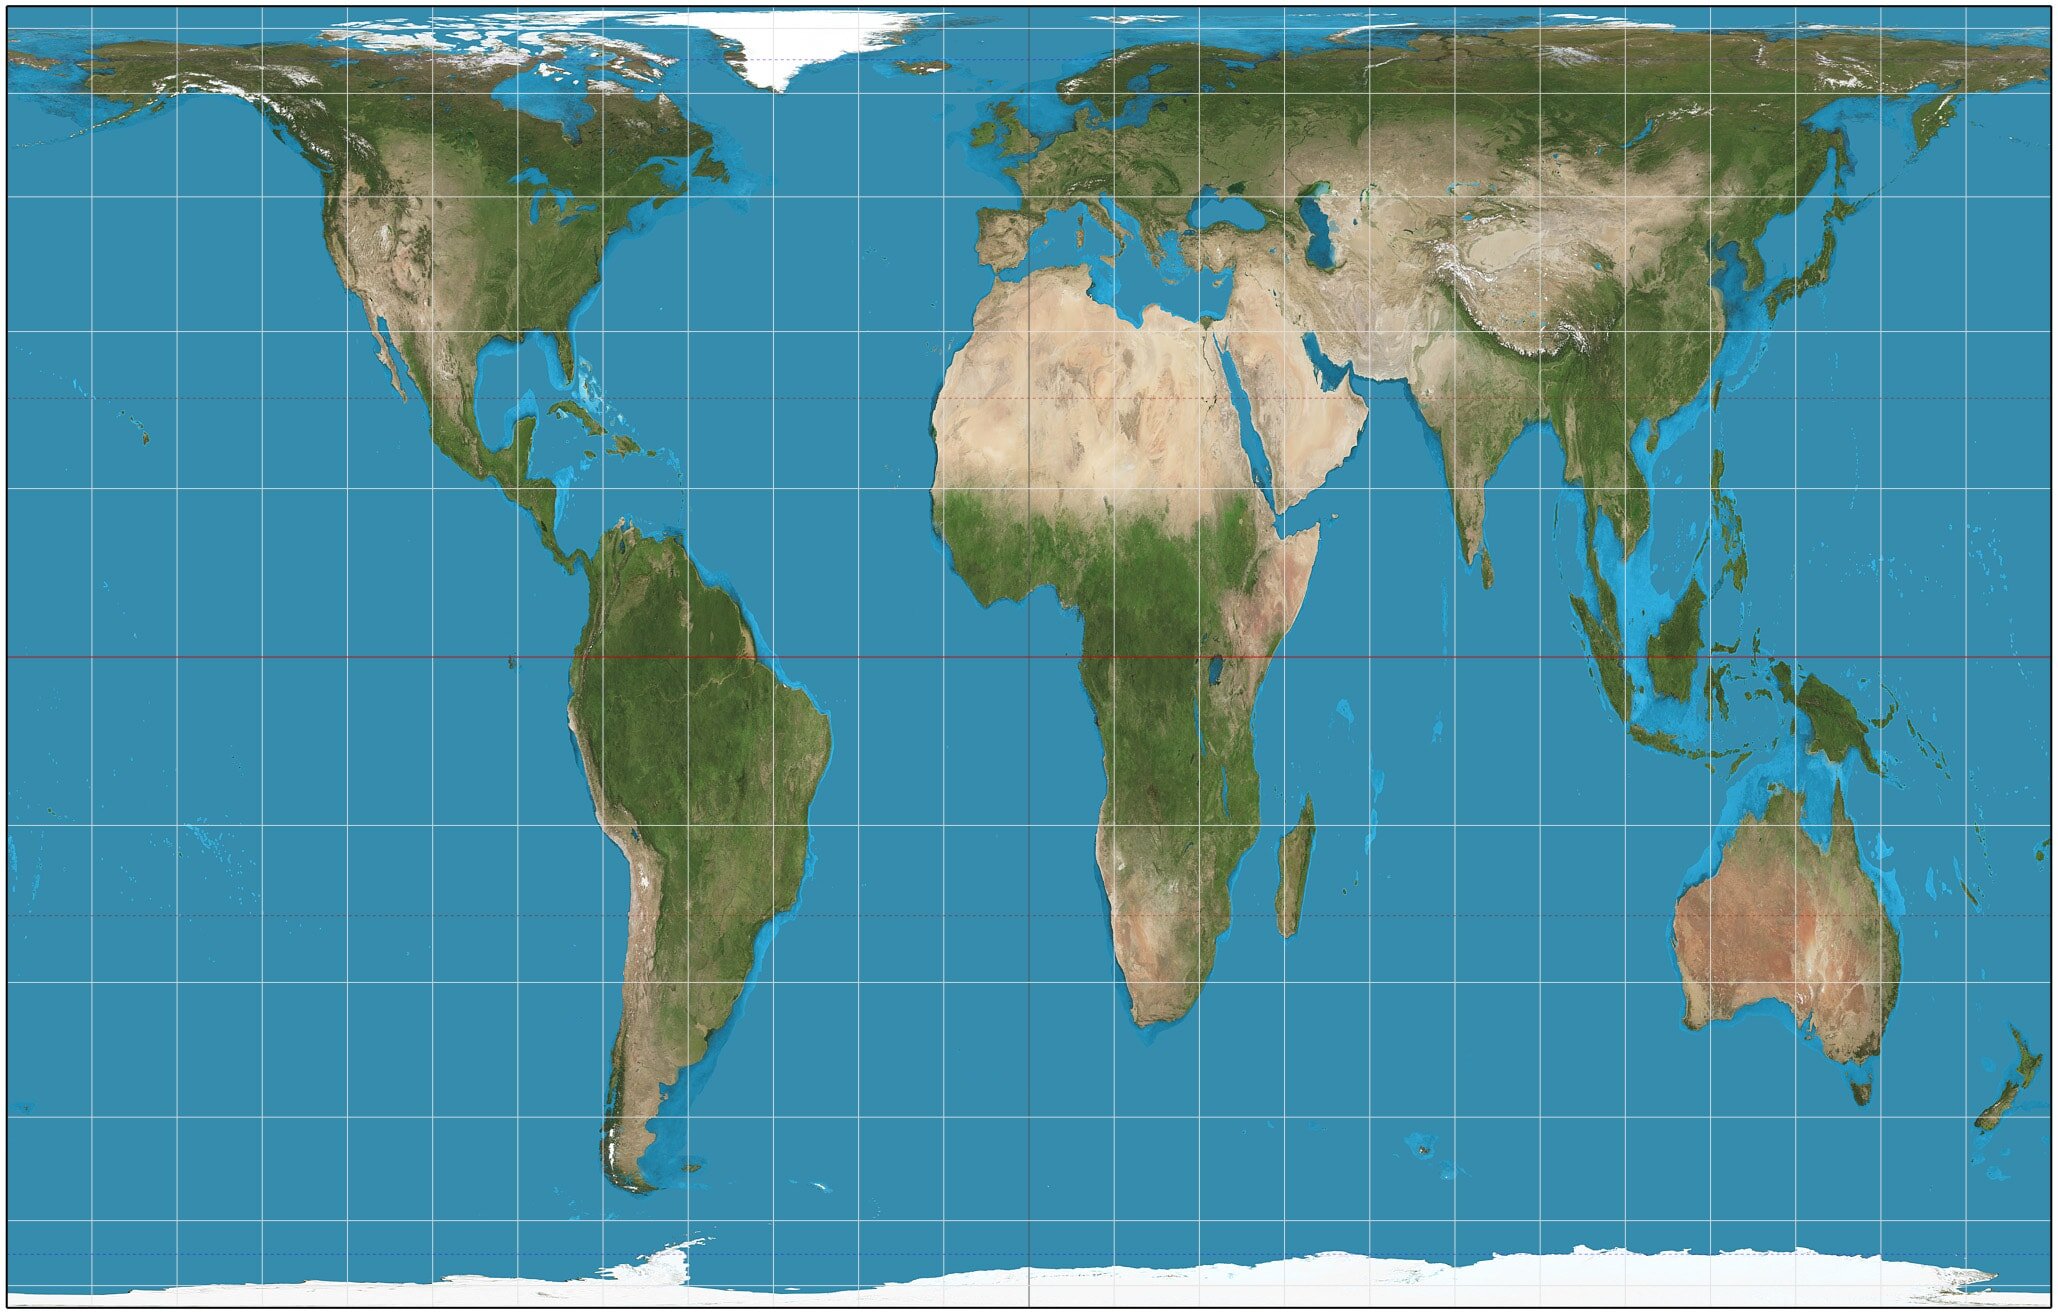 Mapa proyección de Gall-Peters / Wikipedia.